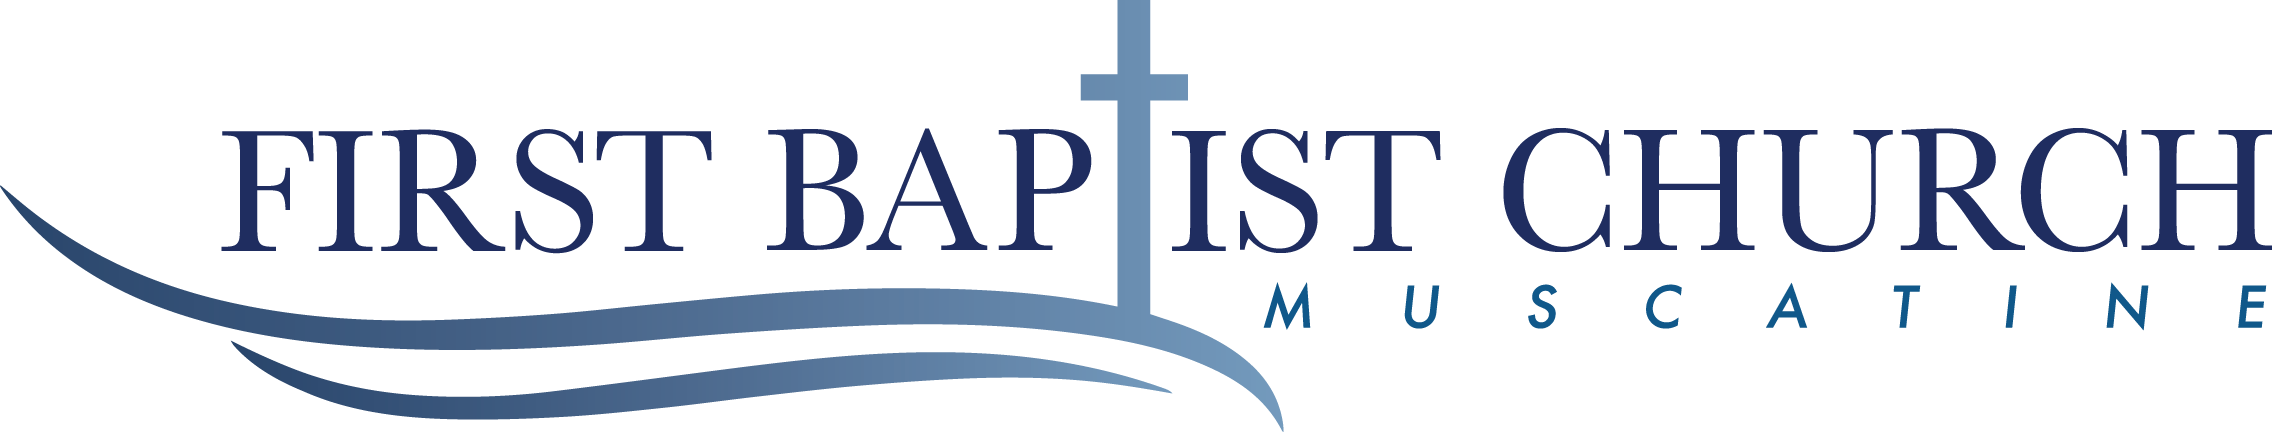 First Baptist Church Footer Logo